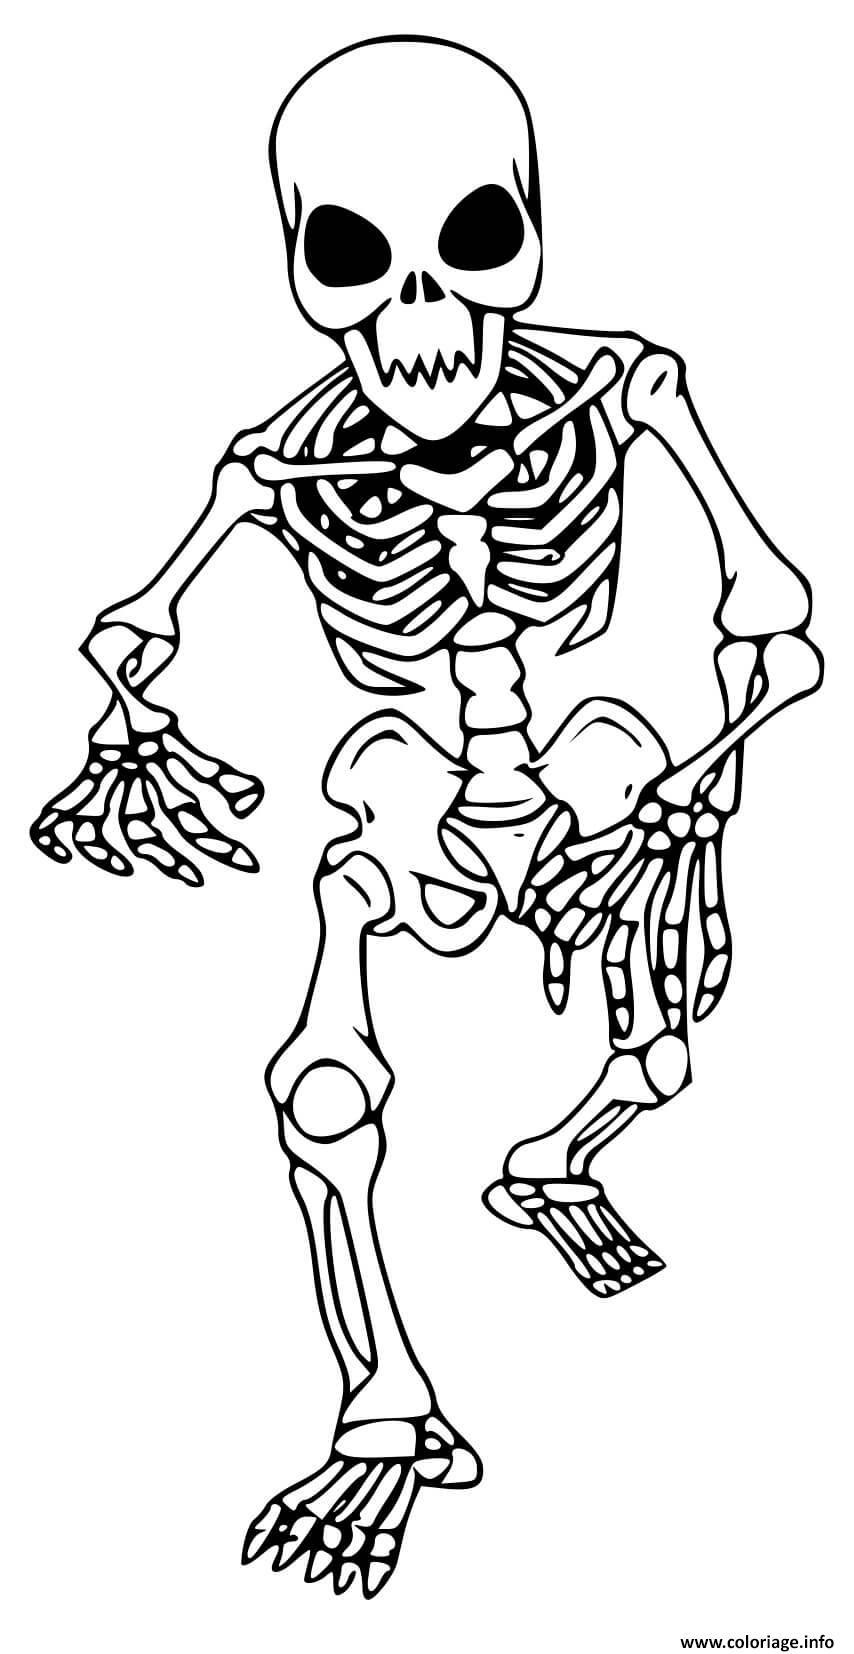 Dessin squelette qui marche pour enfants Coloriage Gratuit à Imprimer